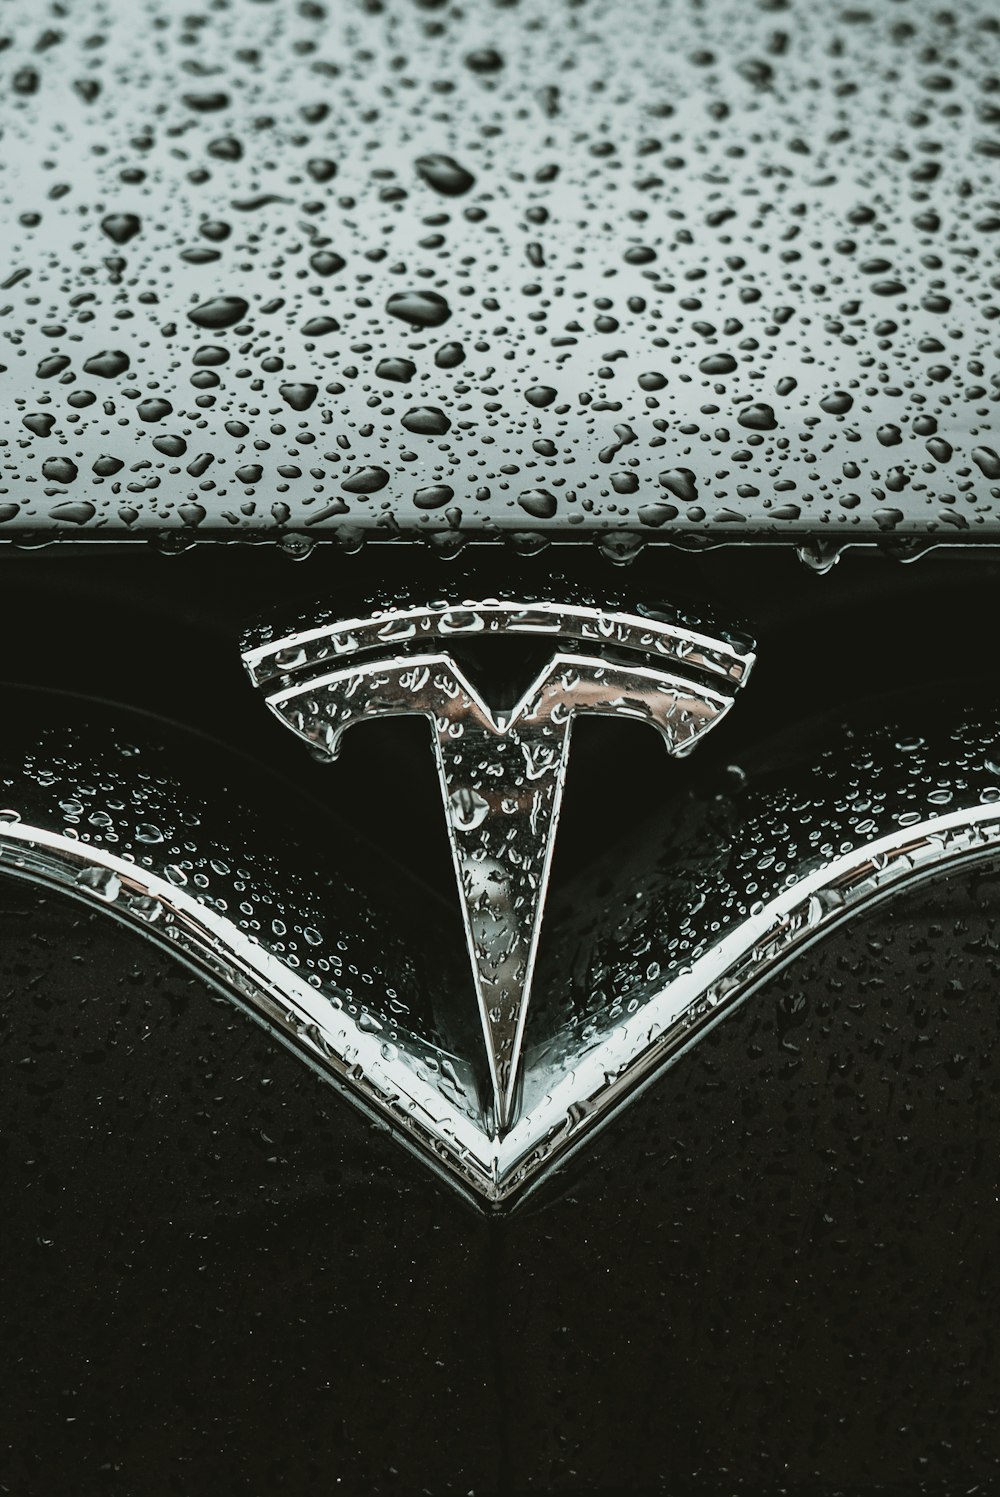 Tesla Model 3 Pictures Download Free Images On Unsplash